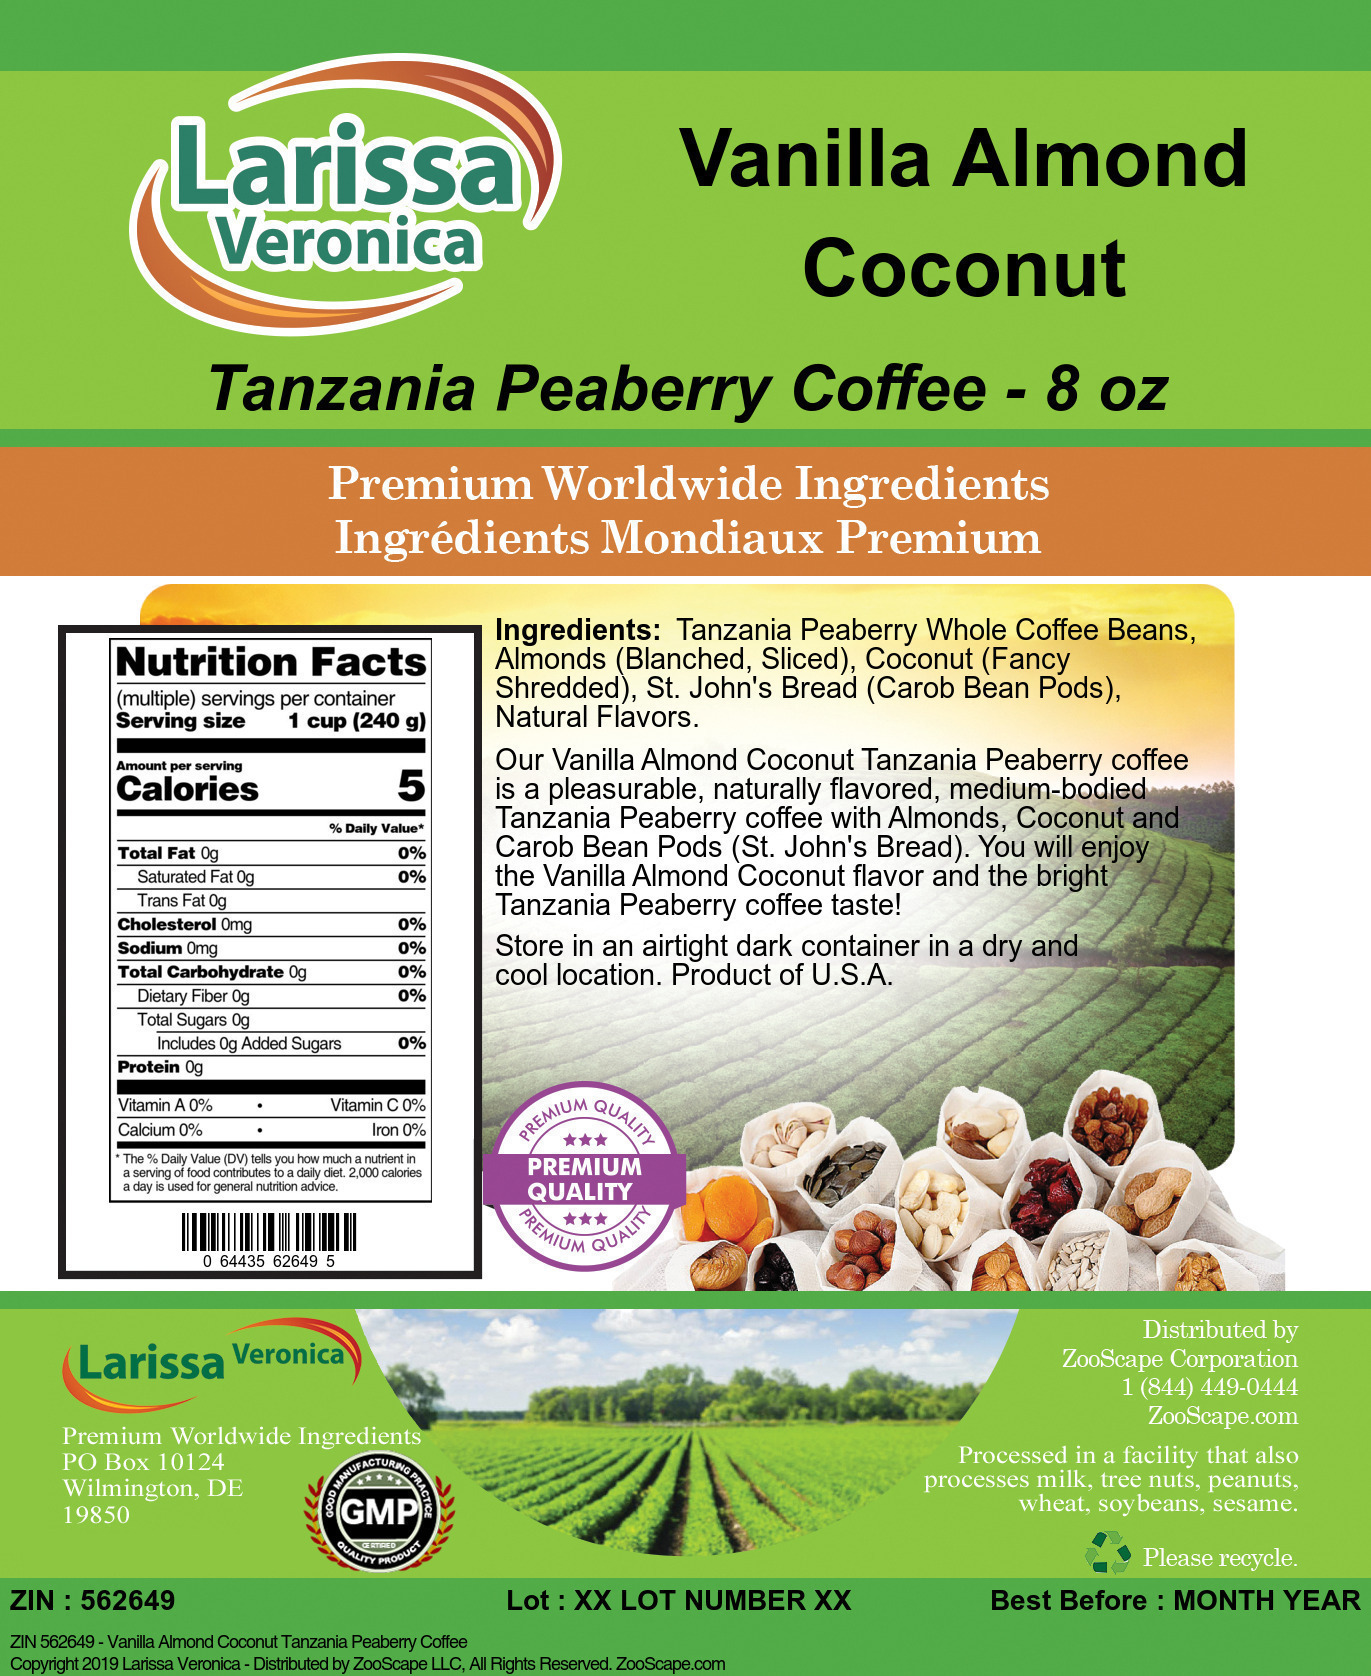 Vanilla Almond Coconut Tanzania Peaberry Coffee - Label